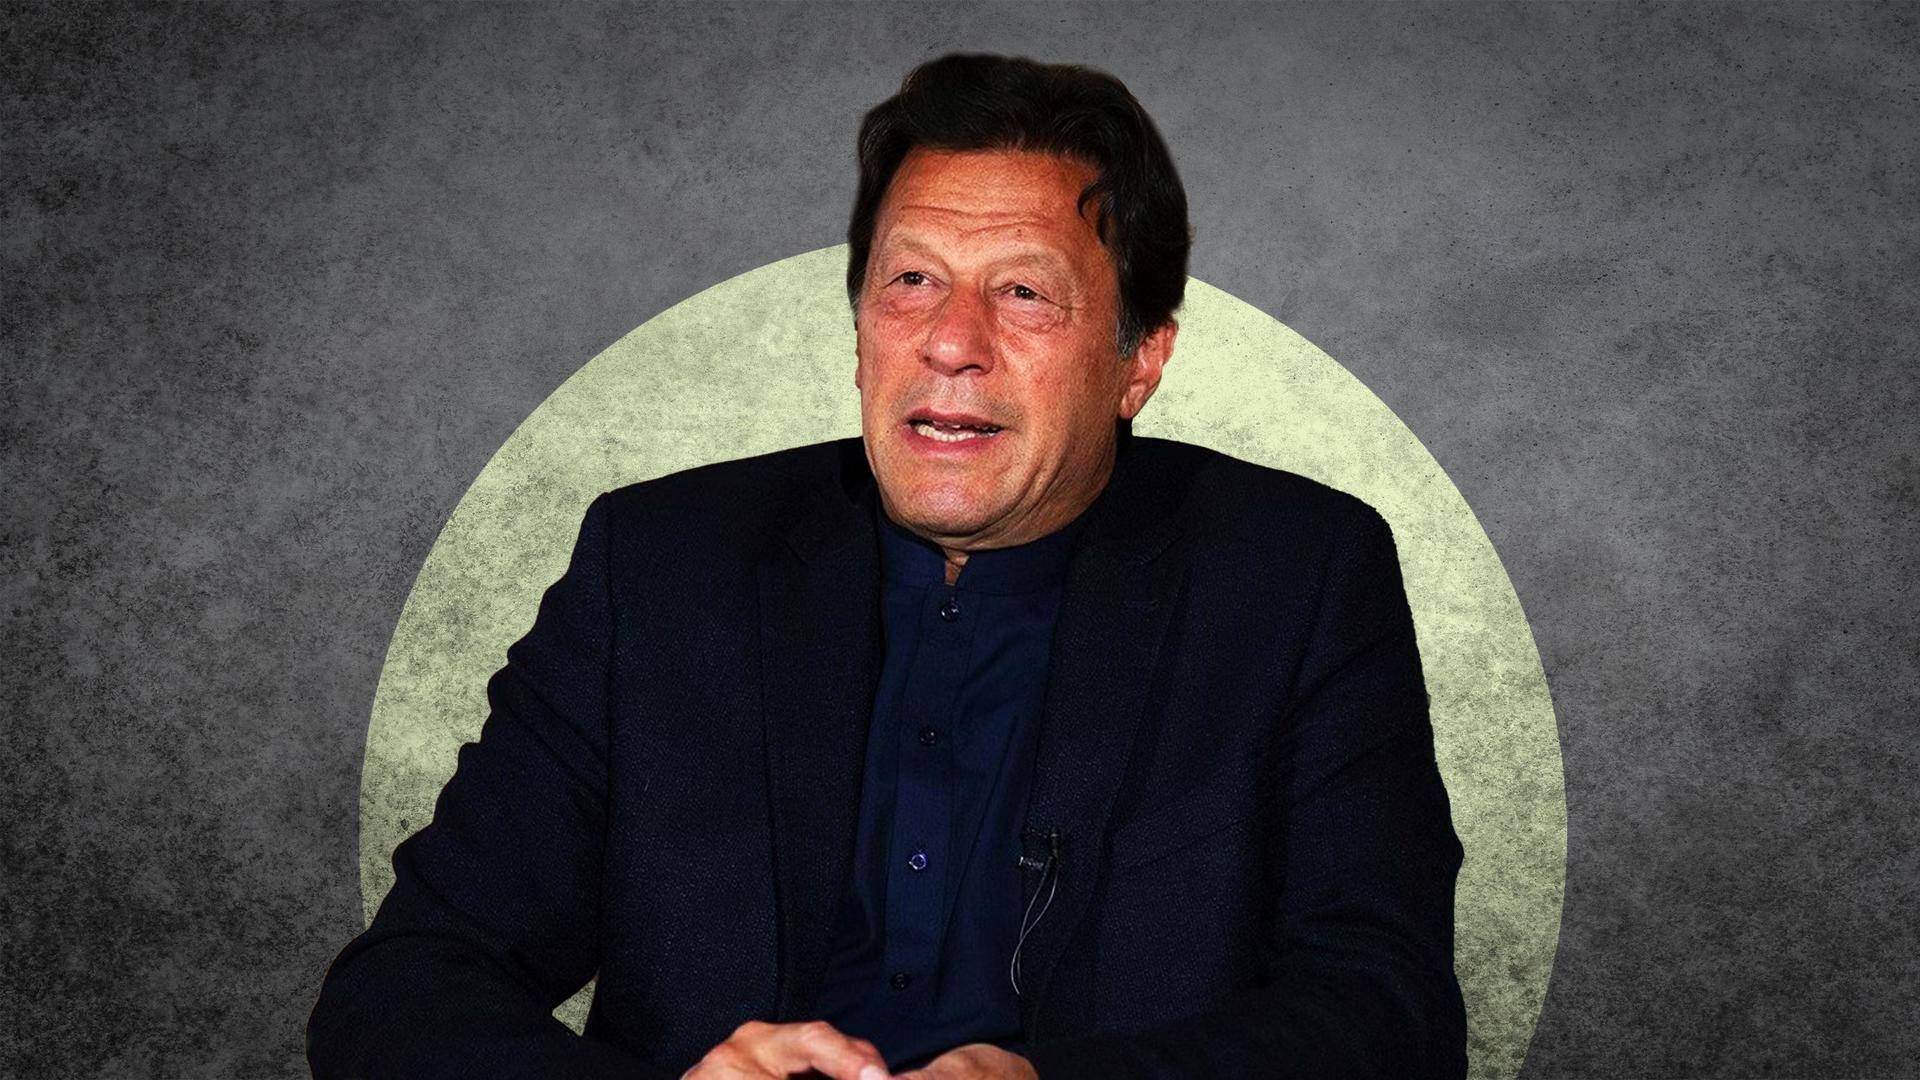 Pakistan government may ban Imran Khan's PTI: Defense minister